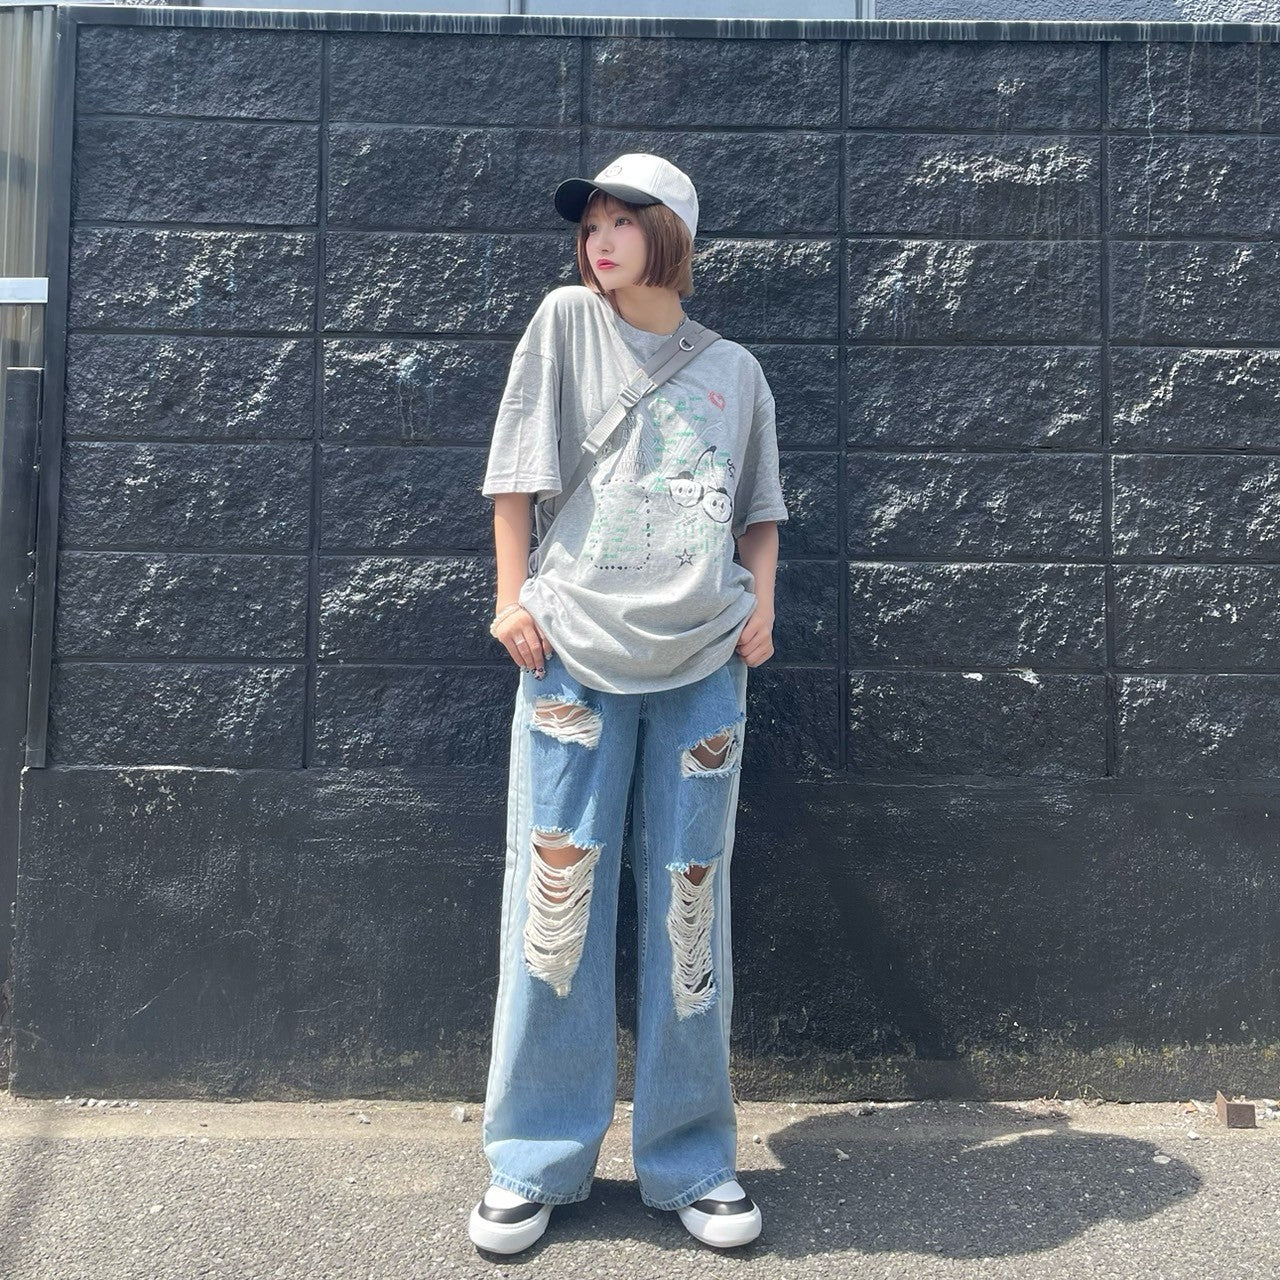 【日本限定】KIRSH X TOKYO シティアートワークTシャツ【メランジグレー】